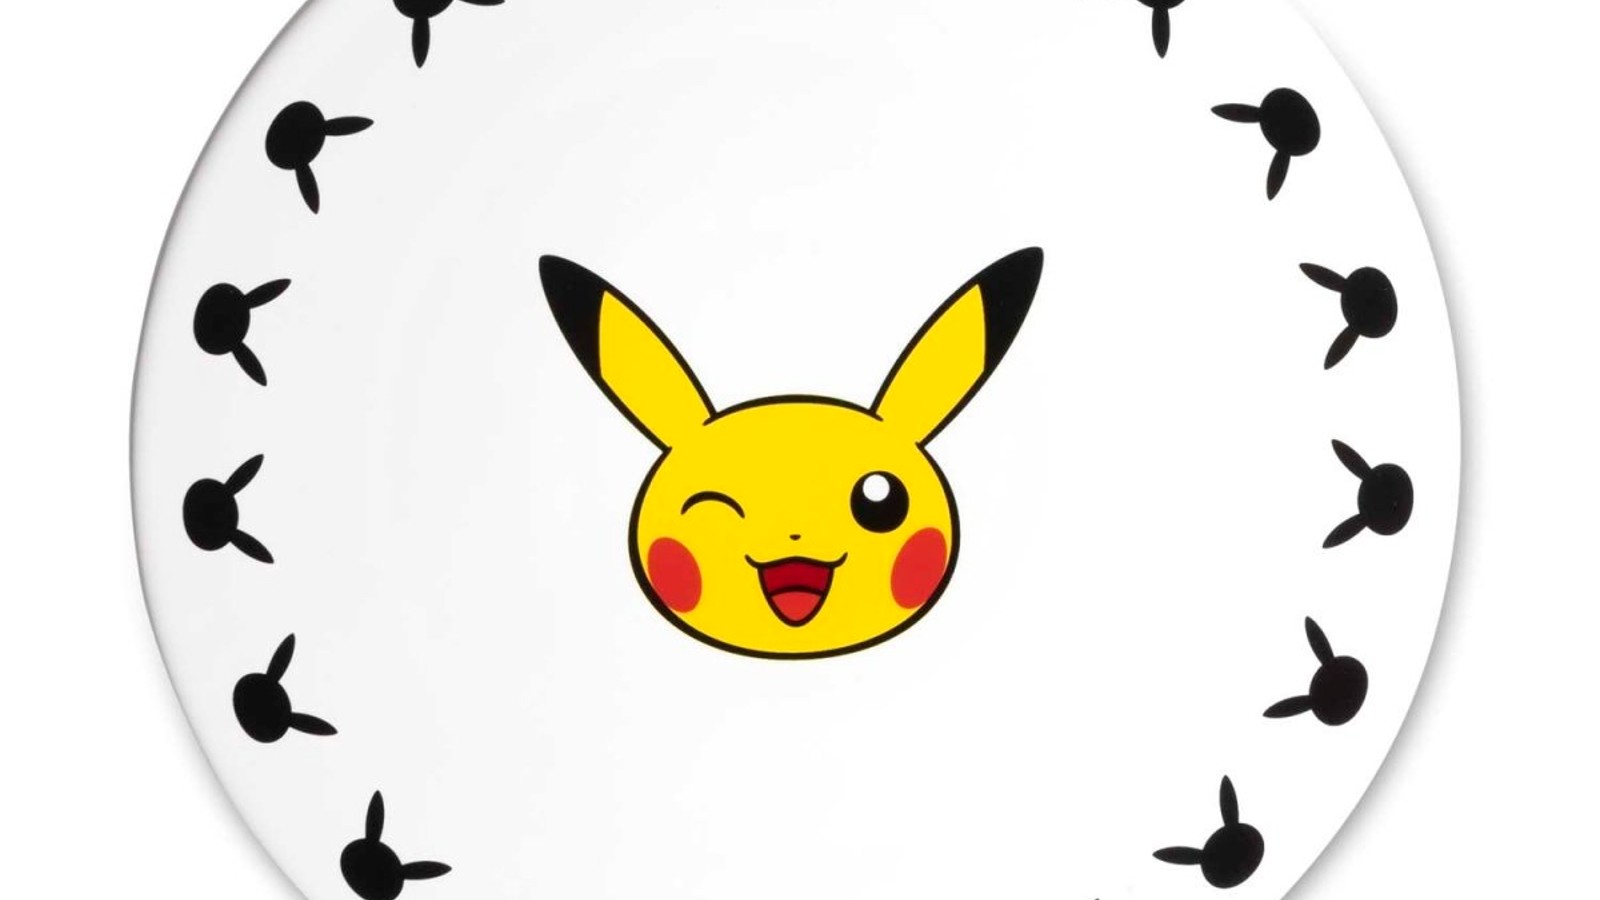 Pikachu Kitchen set review: adorable accents for Pokemon fans